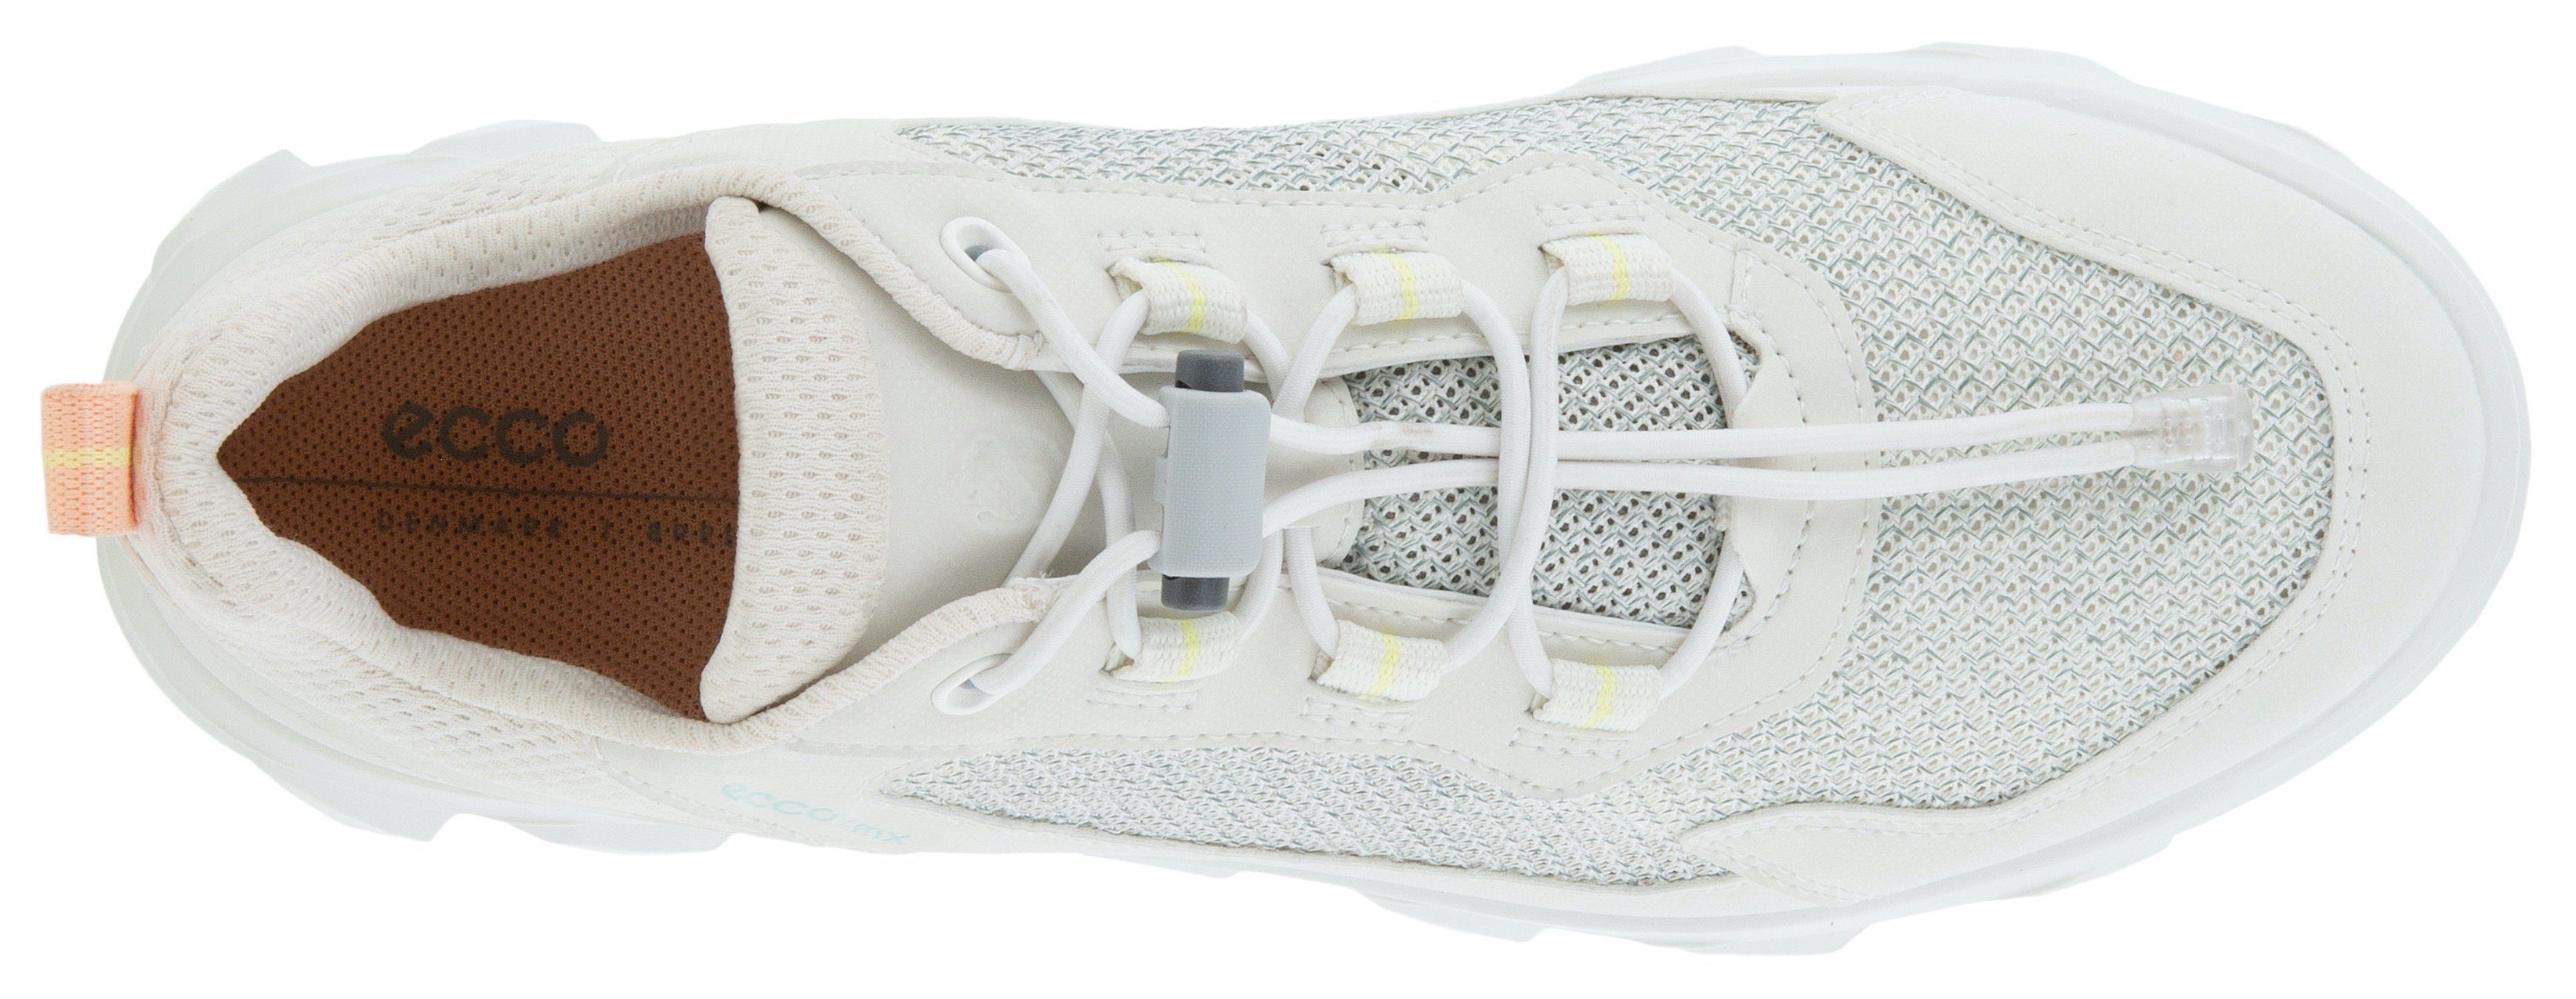 Ecco ECCO MX weiß Sneaker Slip-On W trittdämpfender Fluidform-Ausstattung mit